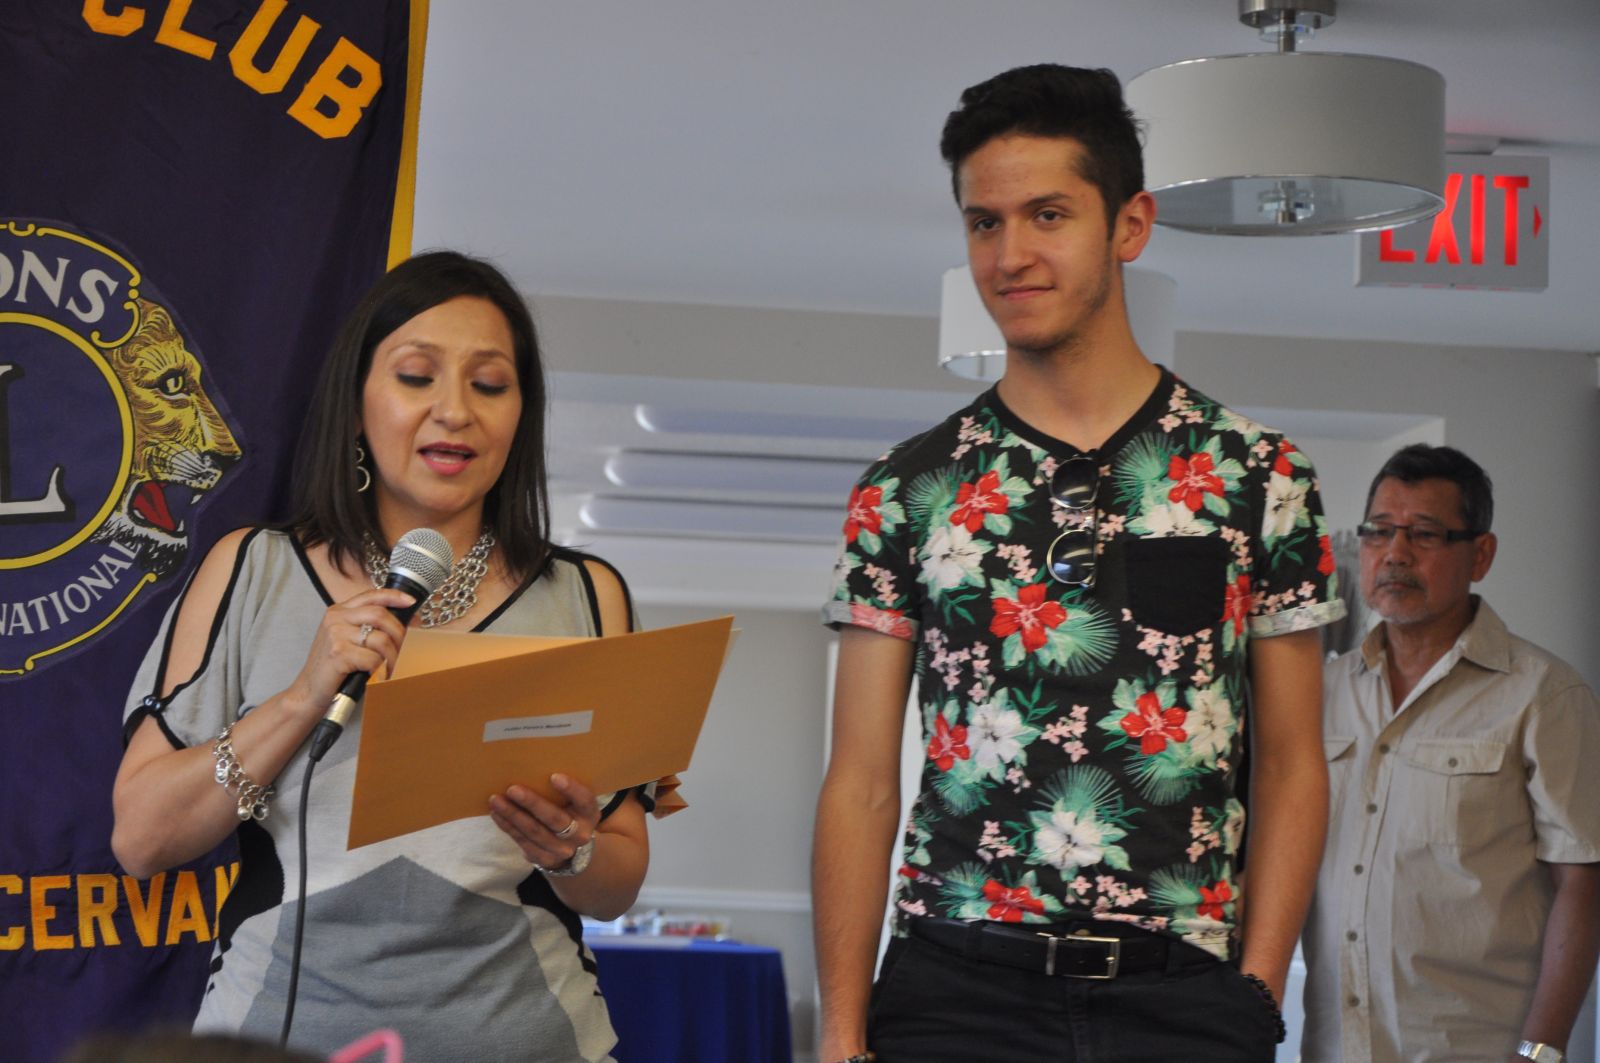 Se realizó la entrega oficial de becas a estudiantes latinoamericanos en Toronto